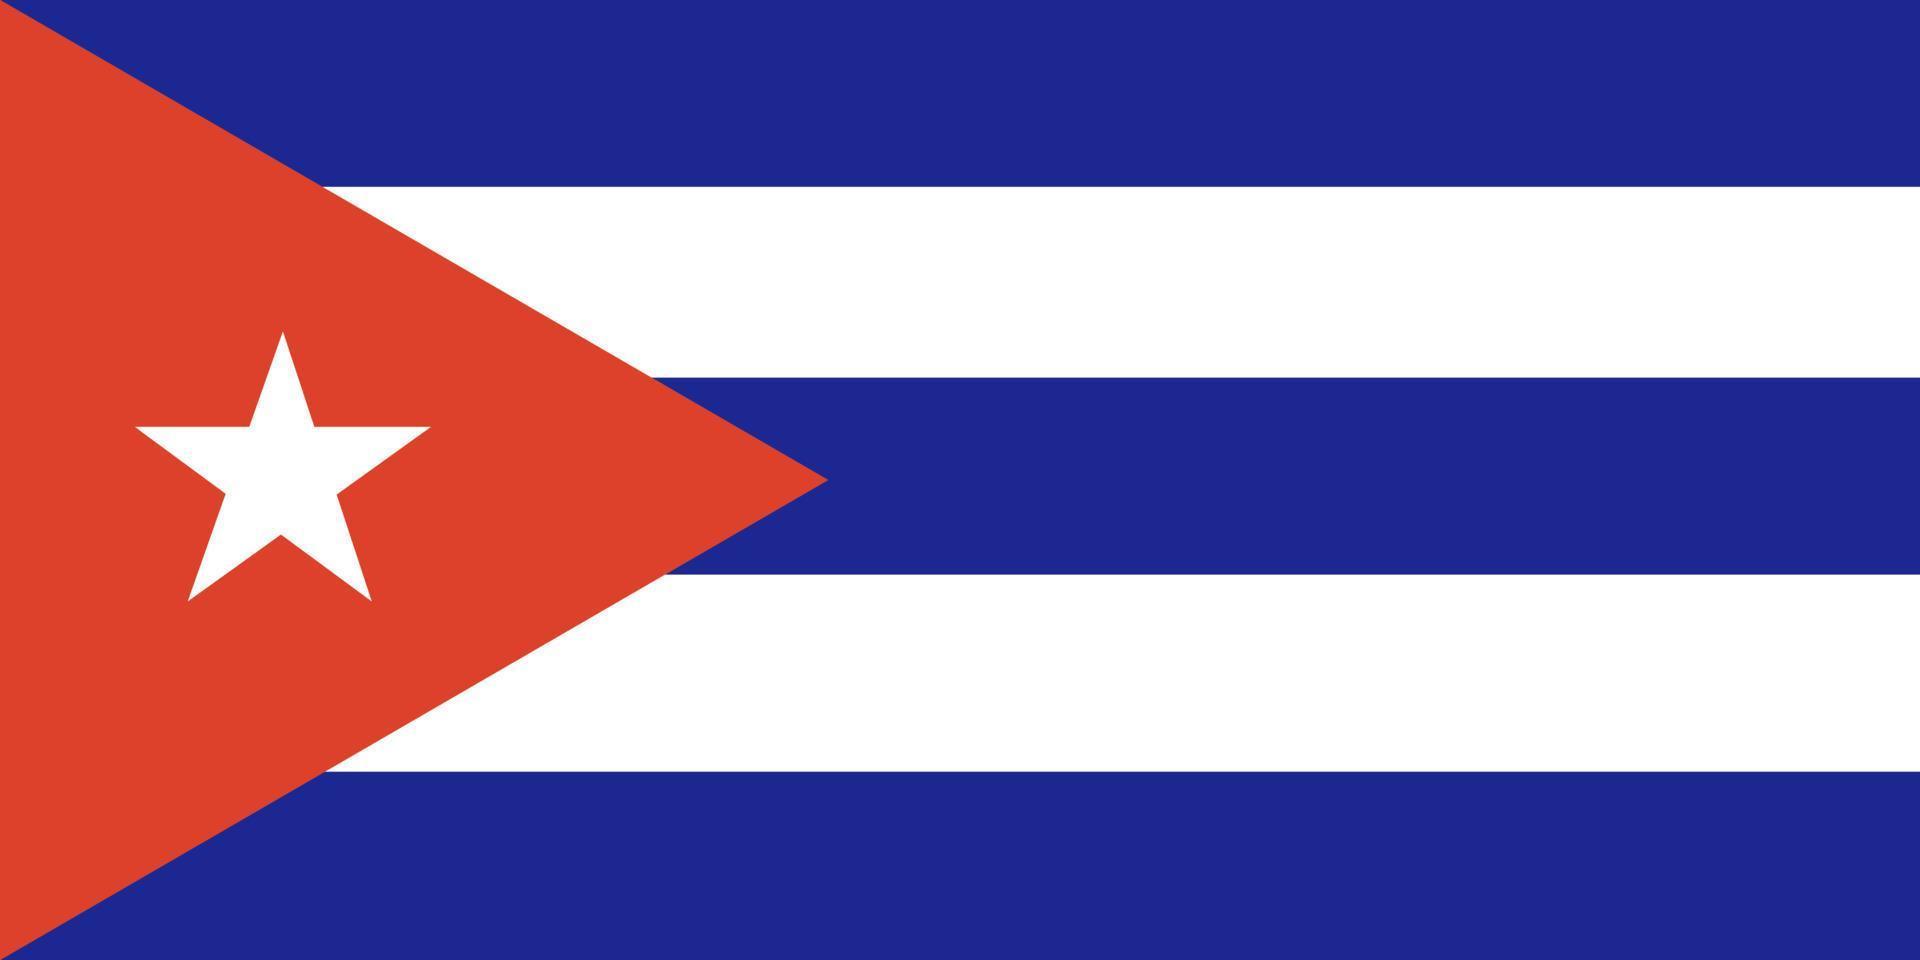 bandera cubana colores y proporciones oficiales. bandera nacional de cuba. vector